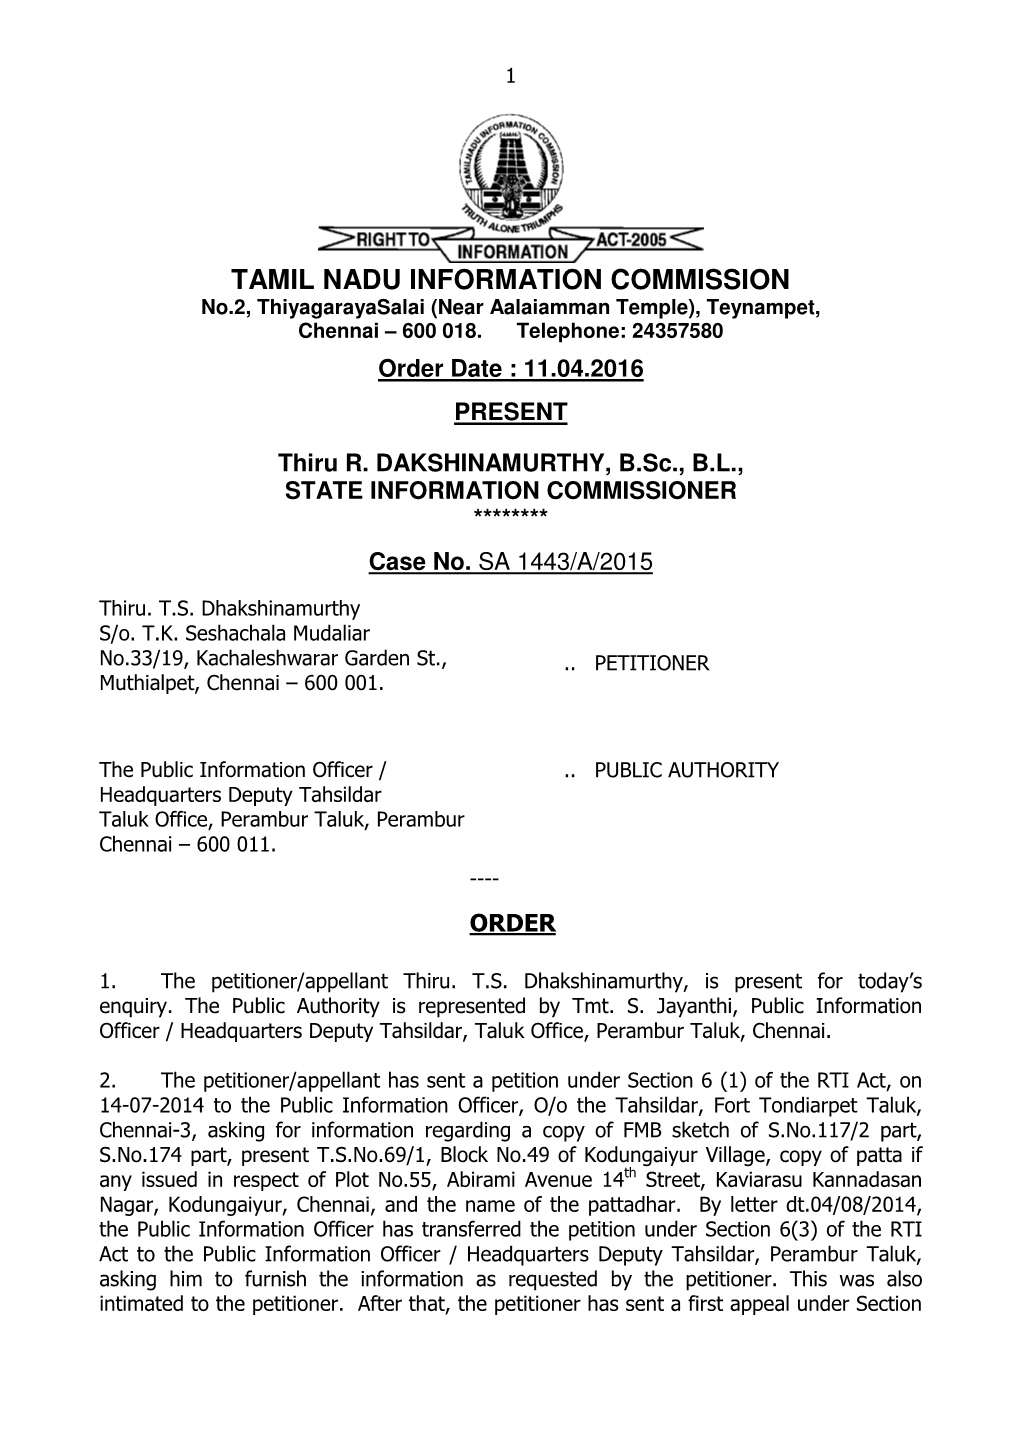 TAMIL NADU INFORMATION COMMISSION No.2, Thiyagarayasalai (Near Aalaiamman Temple), Teynampet, Chennai – 600 018